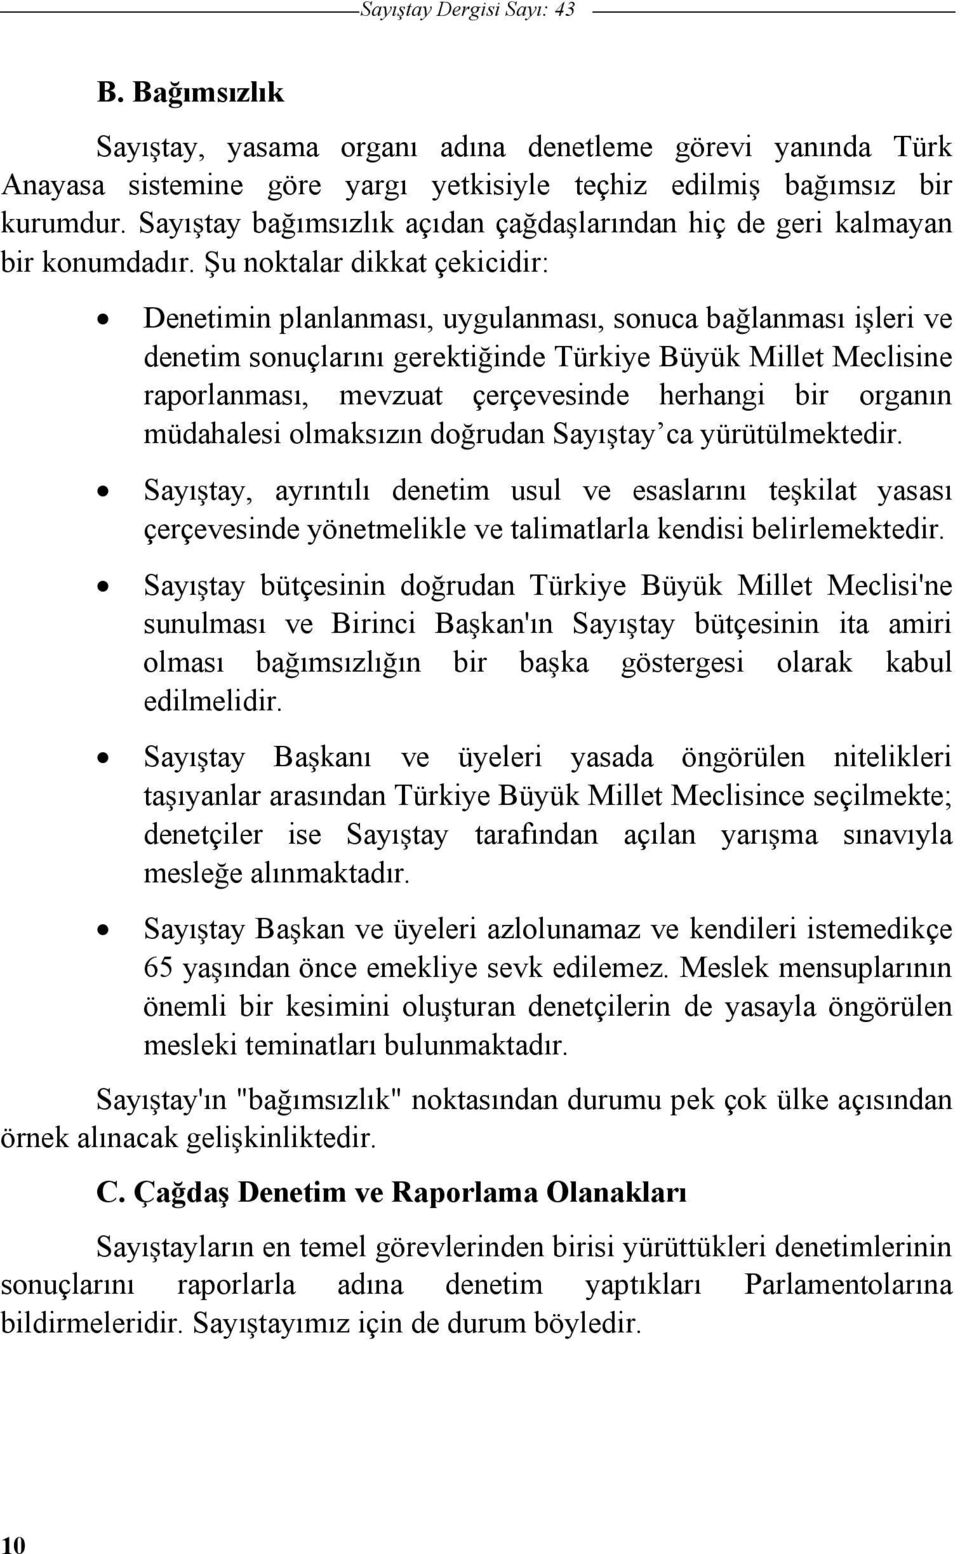 u noktalar dikkat çekicidir: Denetimin planlanması, uygulanması, sonuca balanması ileri ve denetim sonuçlarını gerektiinde Türkiye Büyük Millet Meclisine raporlanması, mevzuat çerçevesinde herhangi